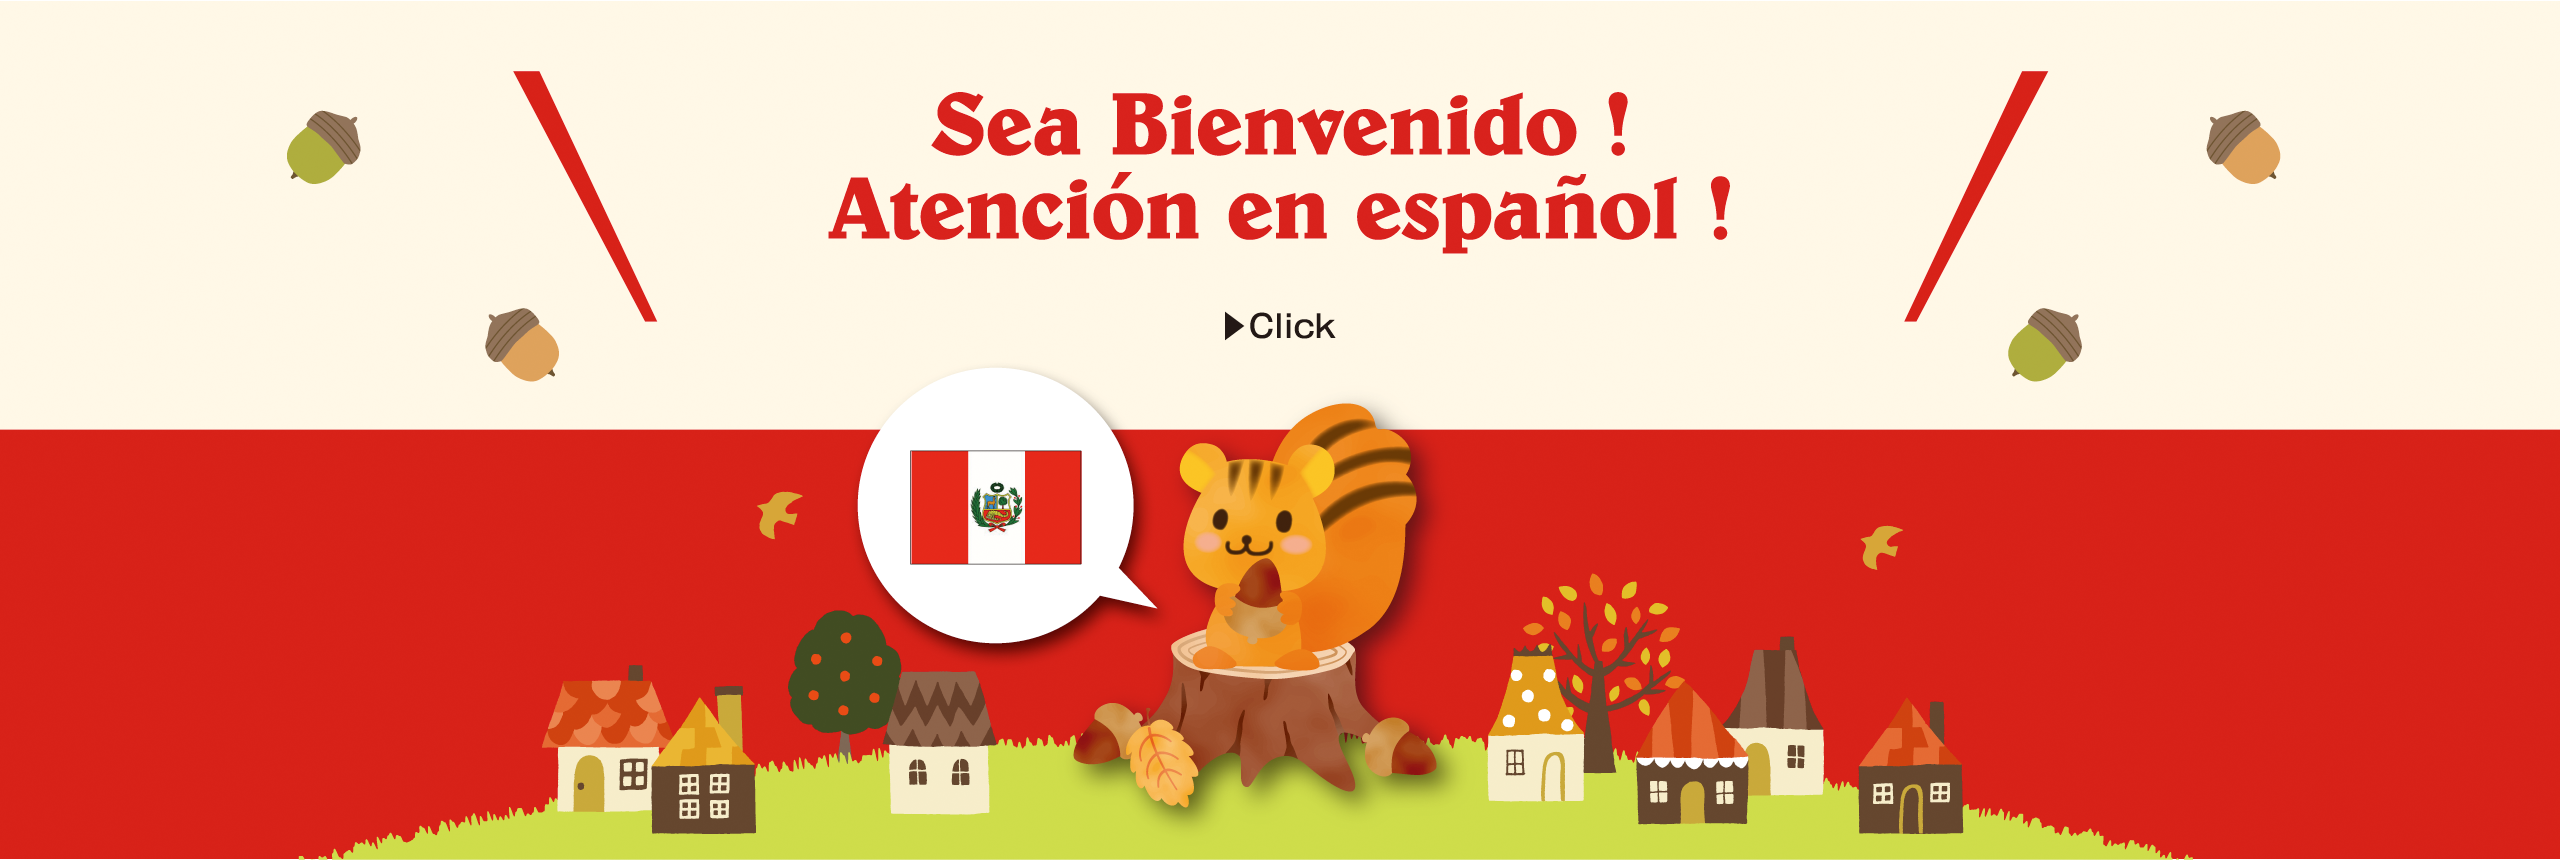 Sea Bienvenido! Atención en español!